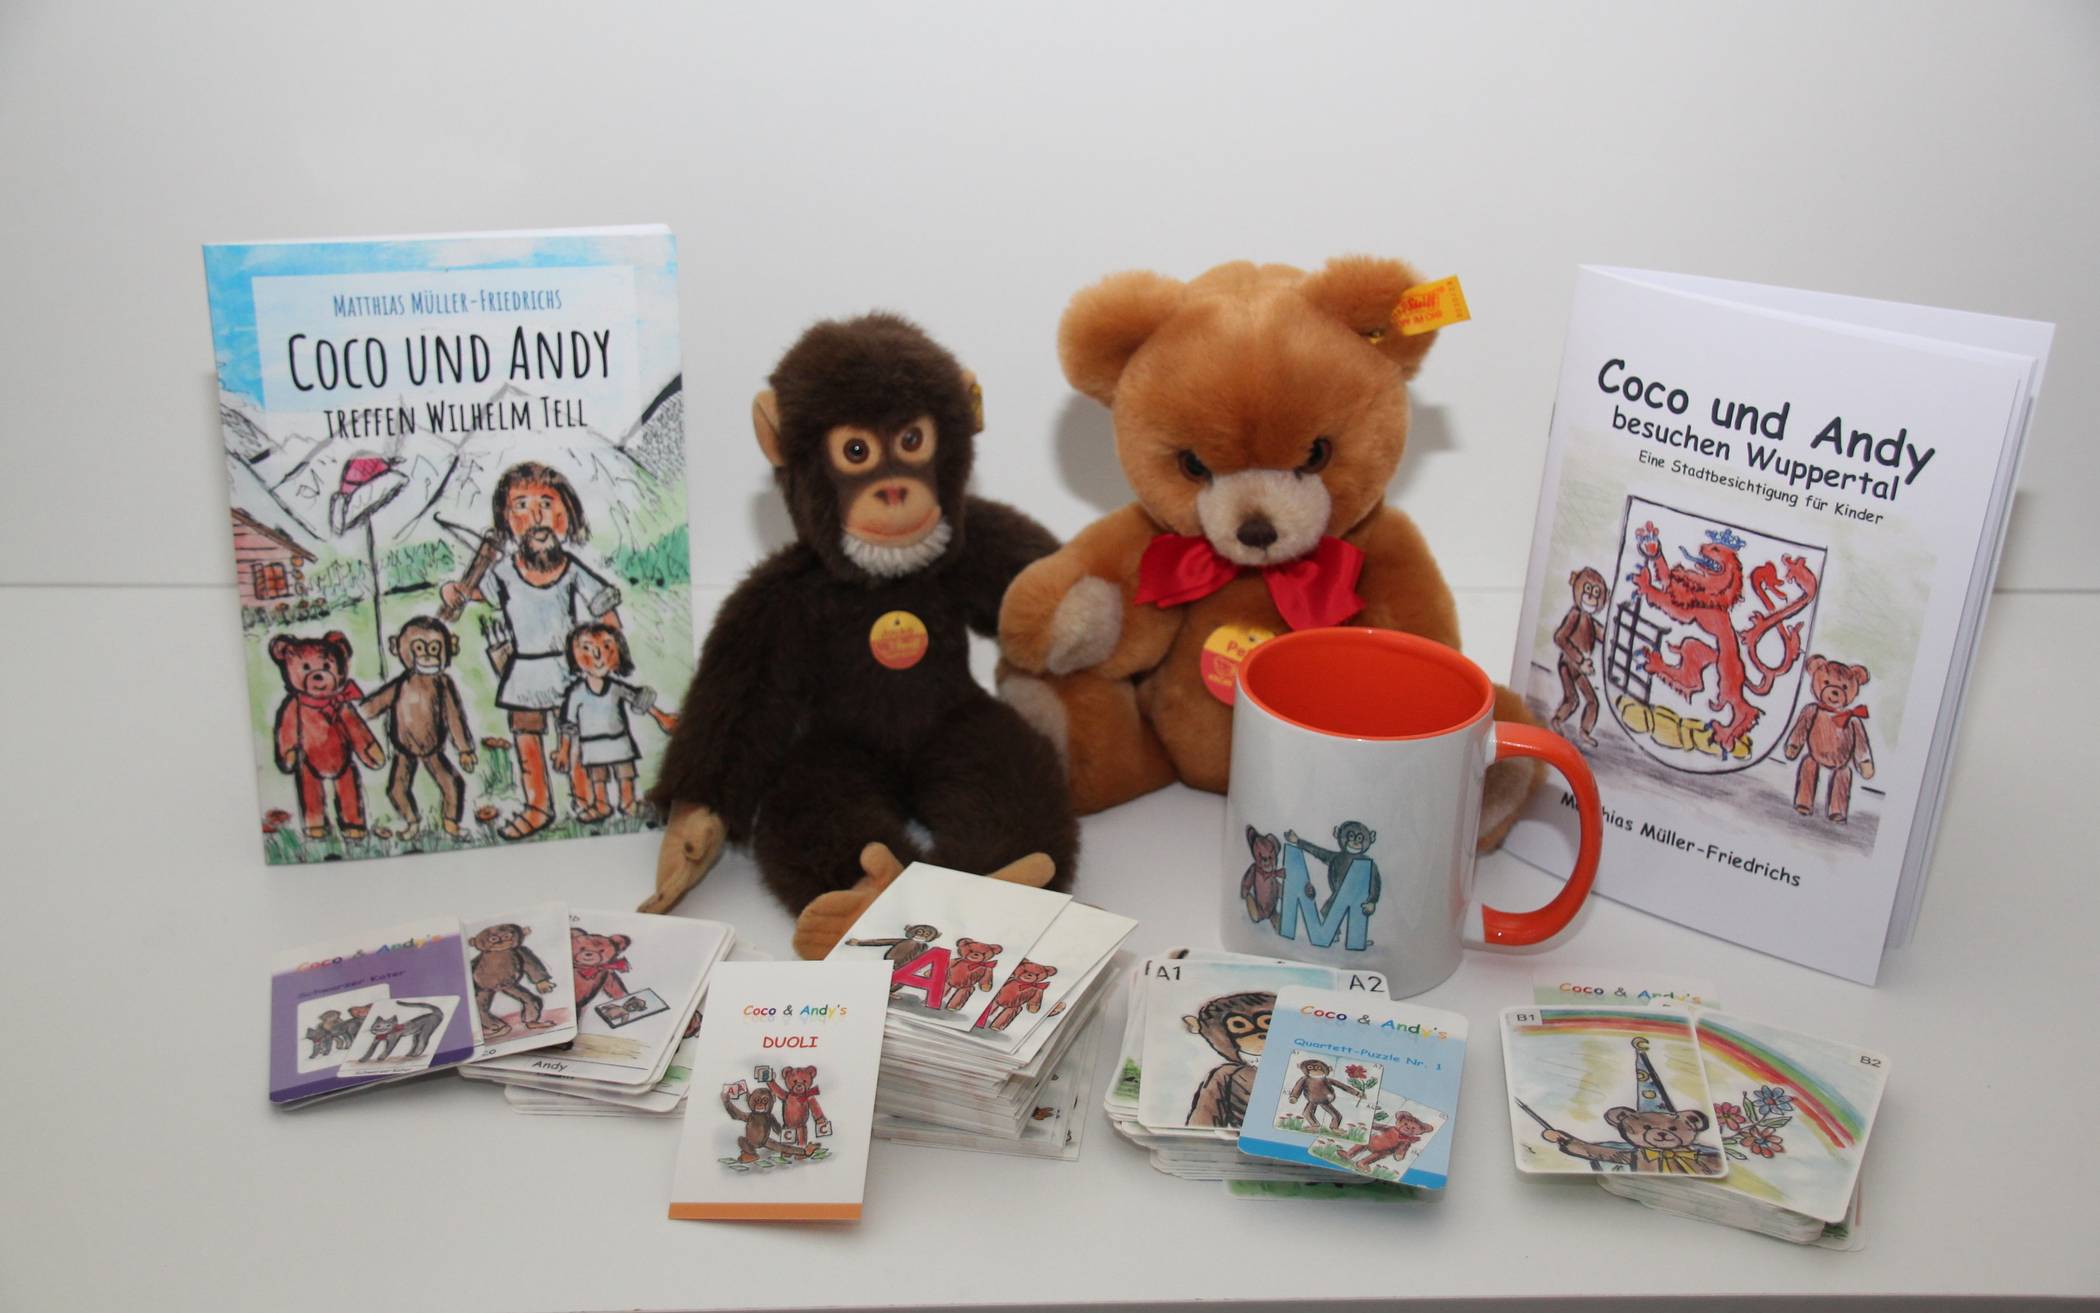  Der kleine Affe Coco und sein Freund Andy, der Bär, haben jetzt jede Menge Spiel- und Lese-Ideen für Kinder.    